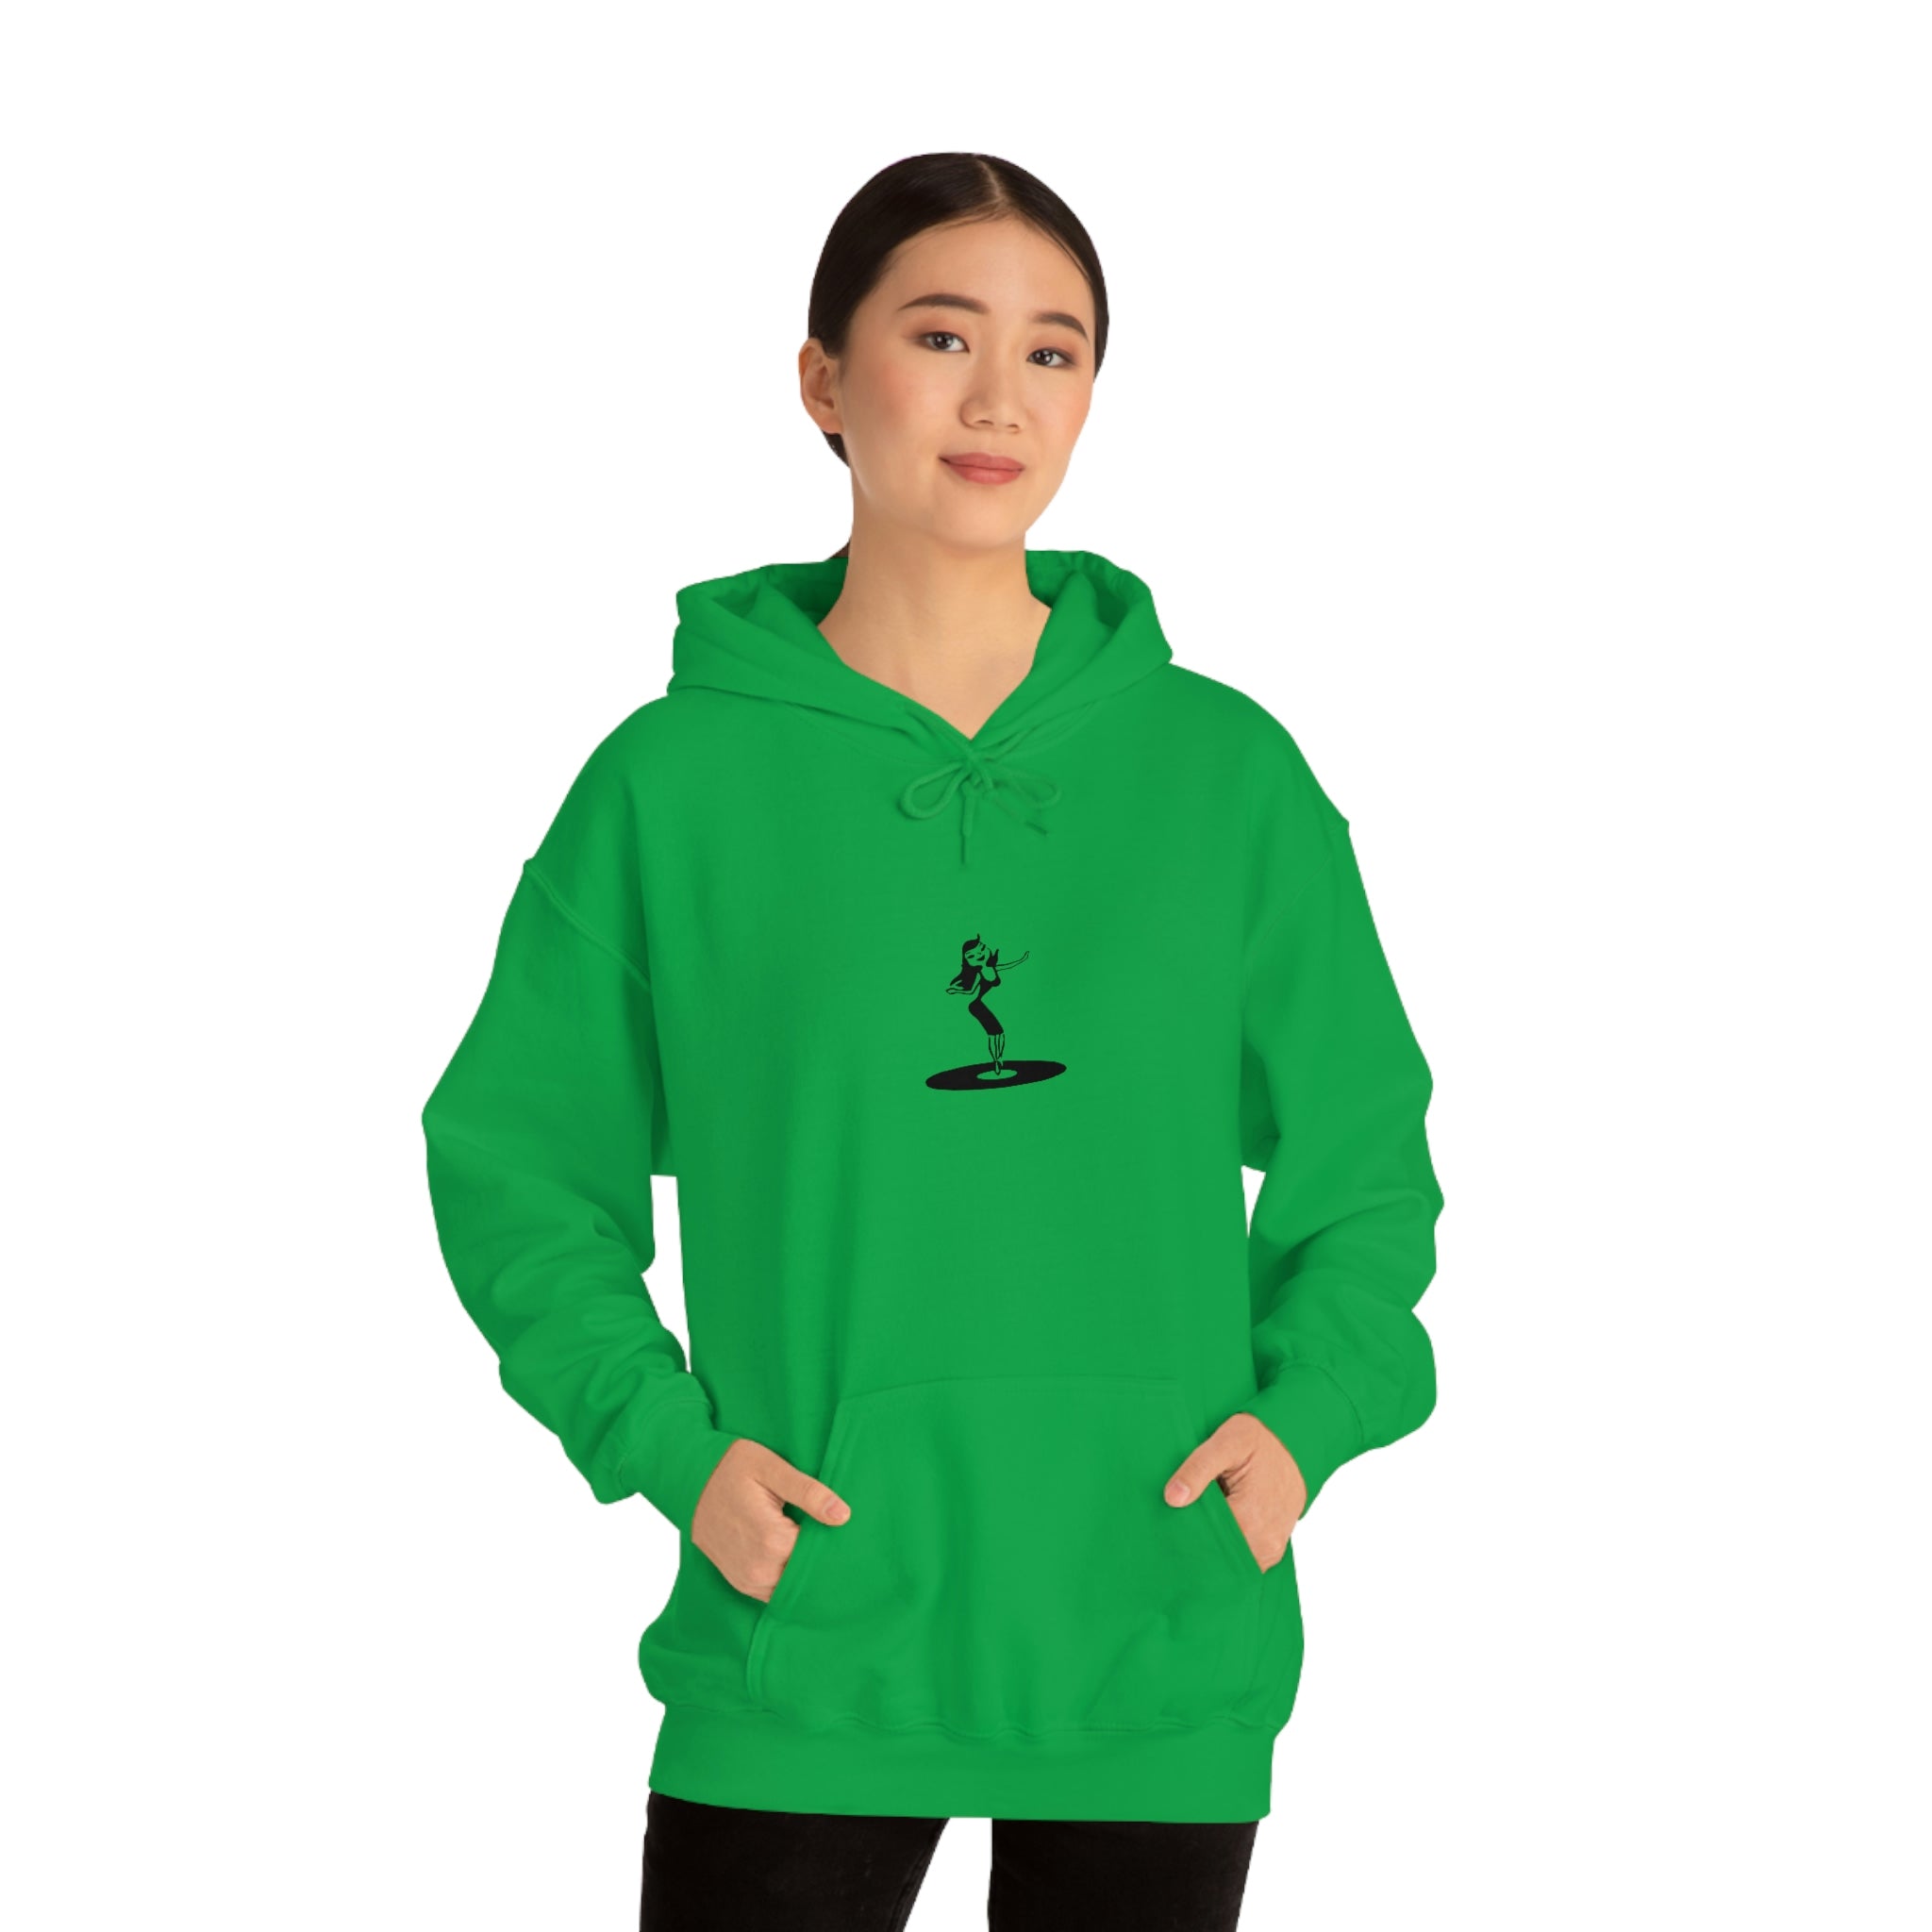 Darla Classic Hoodie - Original logos in black: Unisex Heavy Blend™ Hooded Sweatshirt